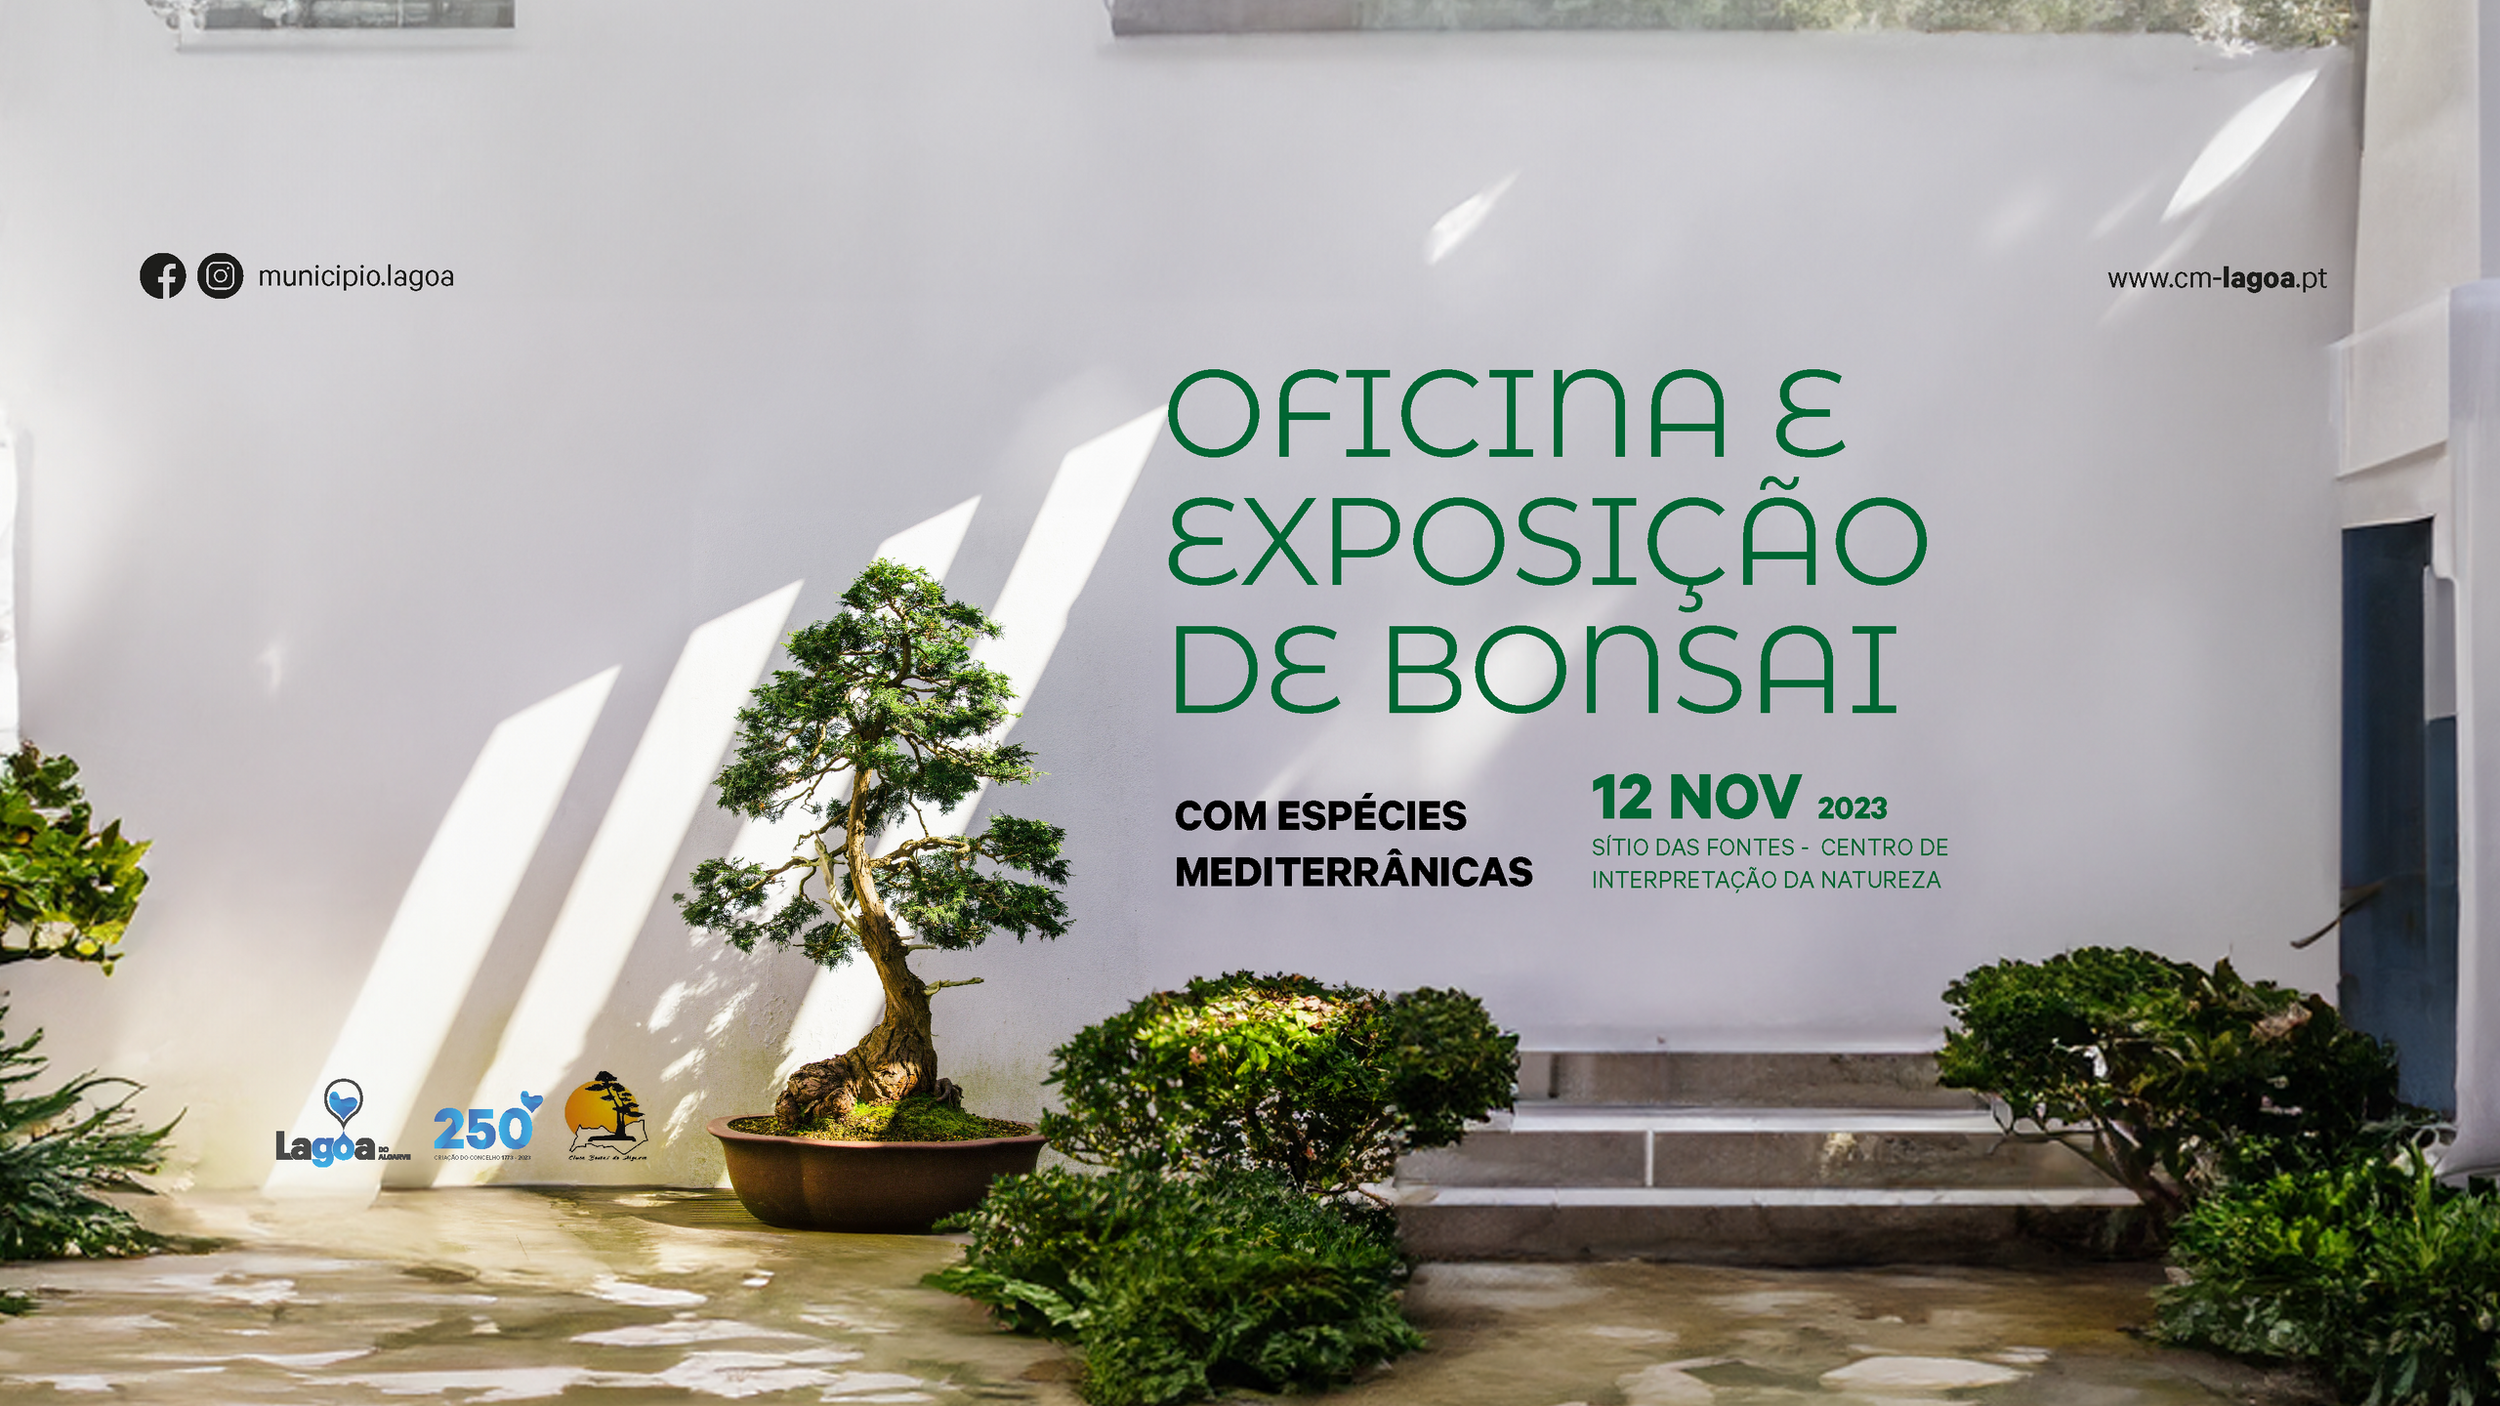 "Oficina e Exposição de Bonsai com espécies Mediterrânicas